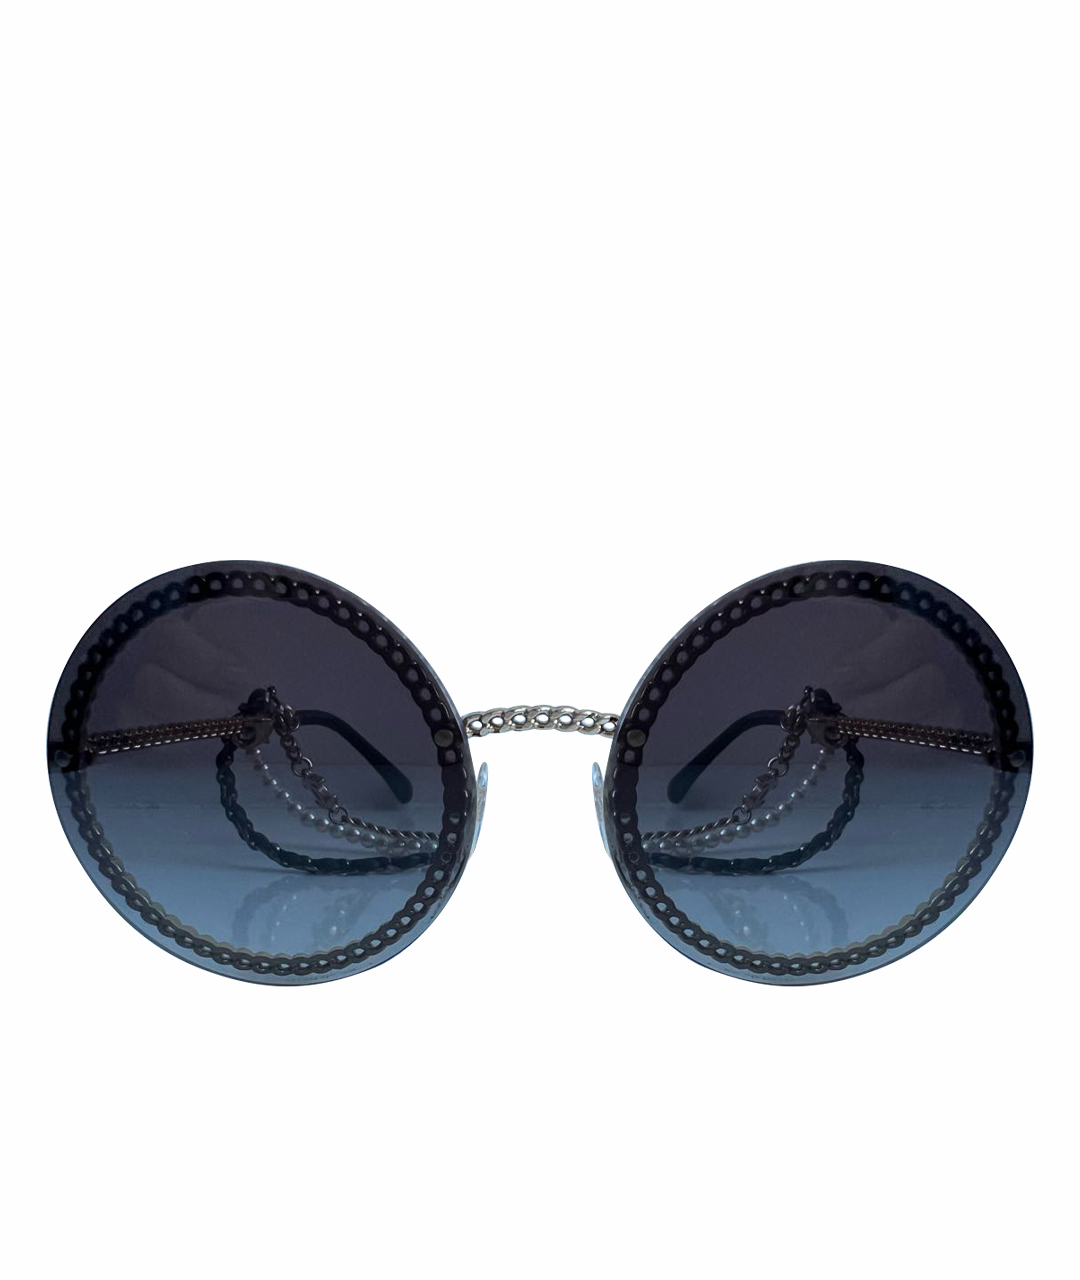 CHANEL PRE-OWNED Коричневые металлические солнцезащитные очки, фото 1